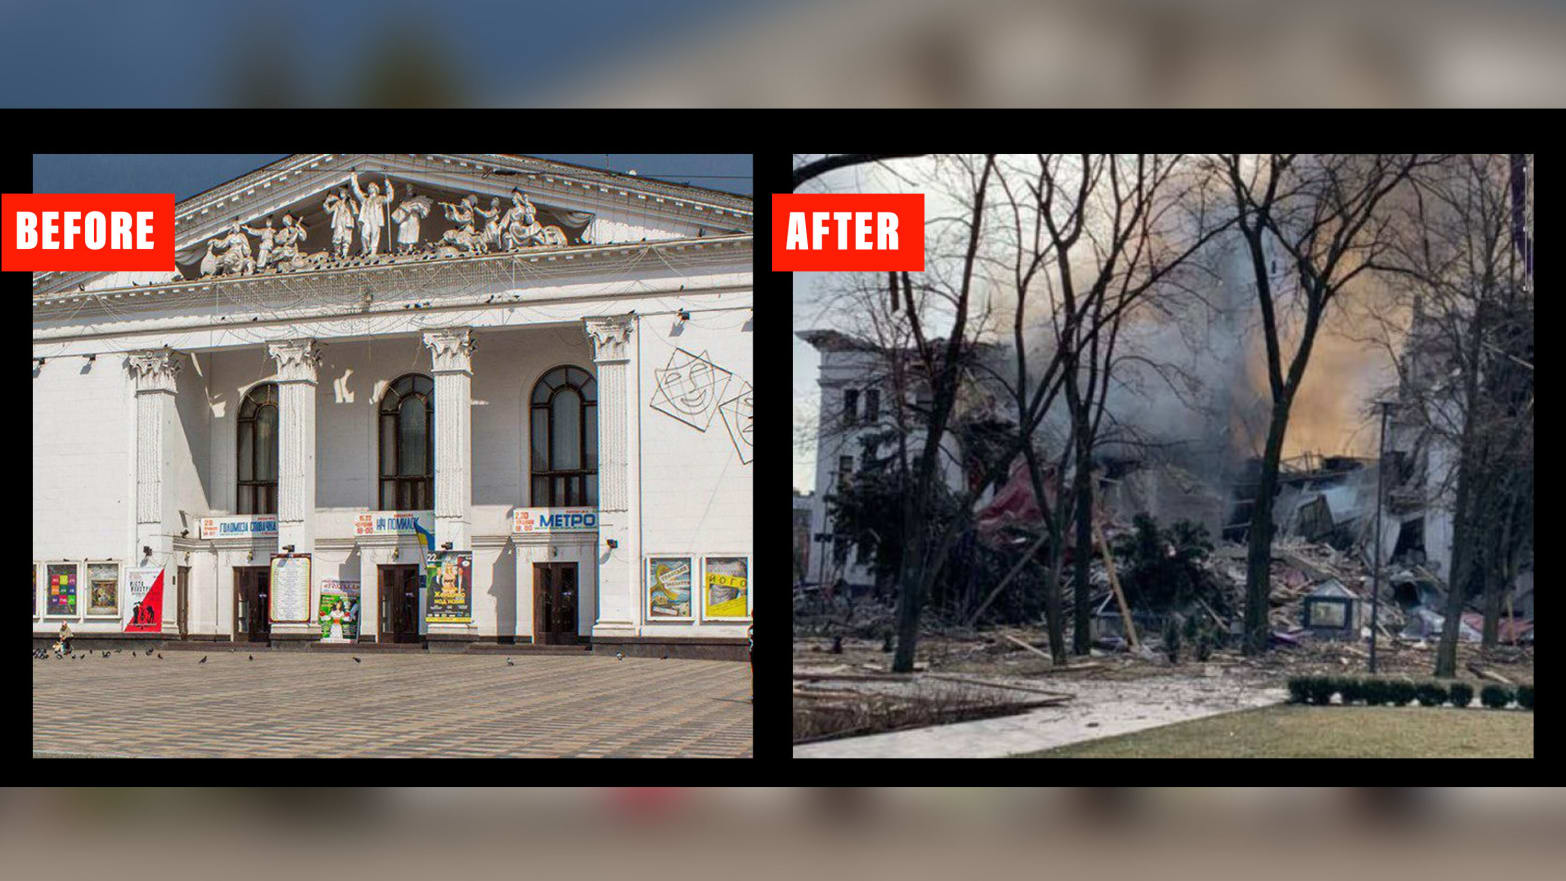 Οι επιζώντες του δραματικού θεάτρου της Μαριούπολης έφτασαν σε αυτοσχέδιο καταφύγιο βομβών πριν χτυπήσει η ρωσική απεργία